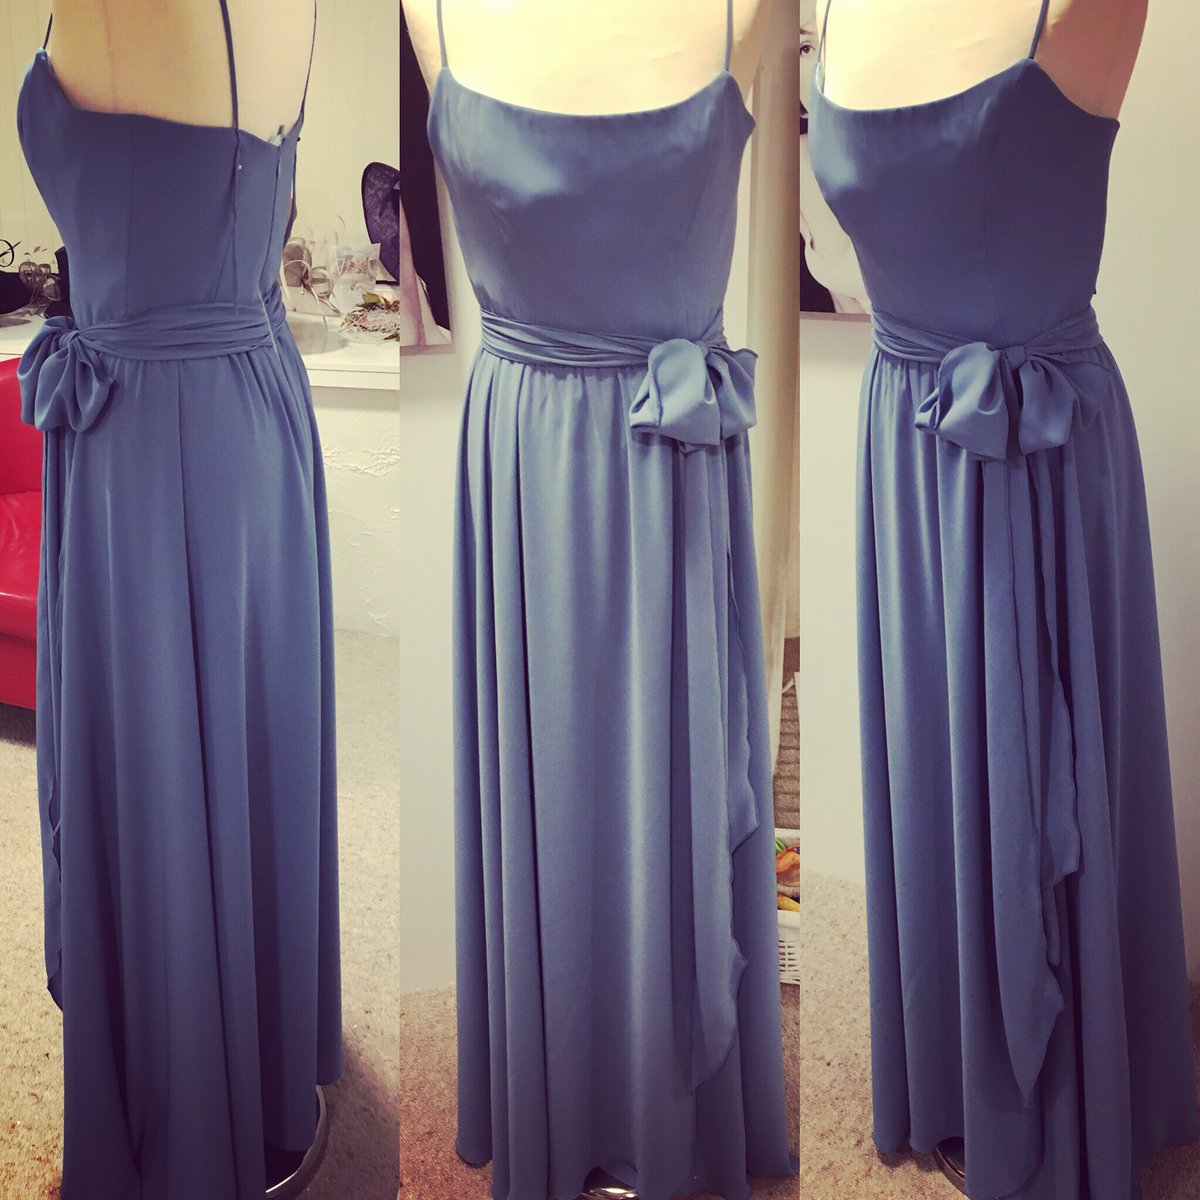 denim blue bridesmaid dresses